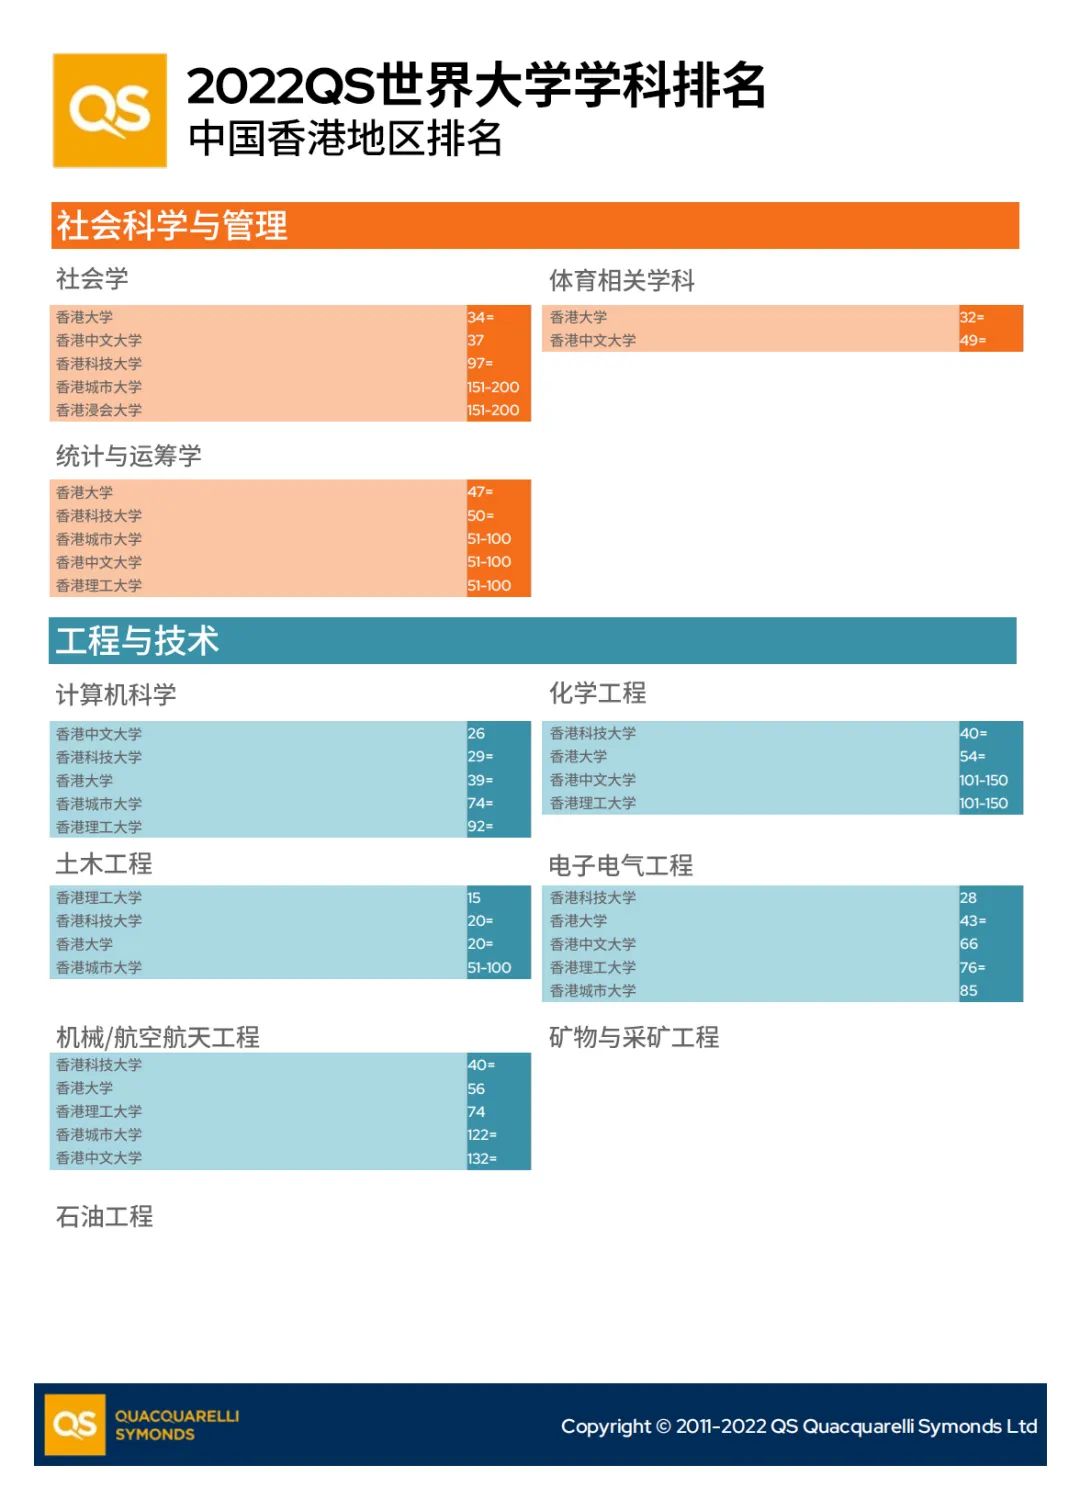 「香港留学攻略」盘点香港院校在最新QS排名中的学科表现